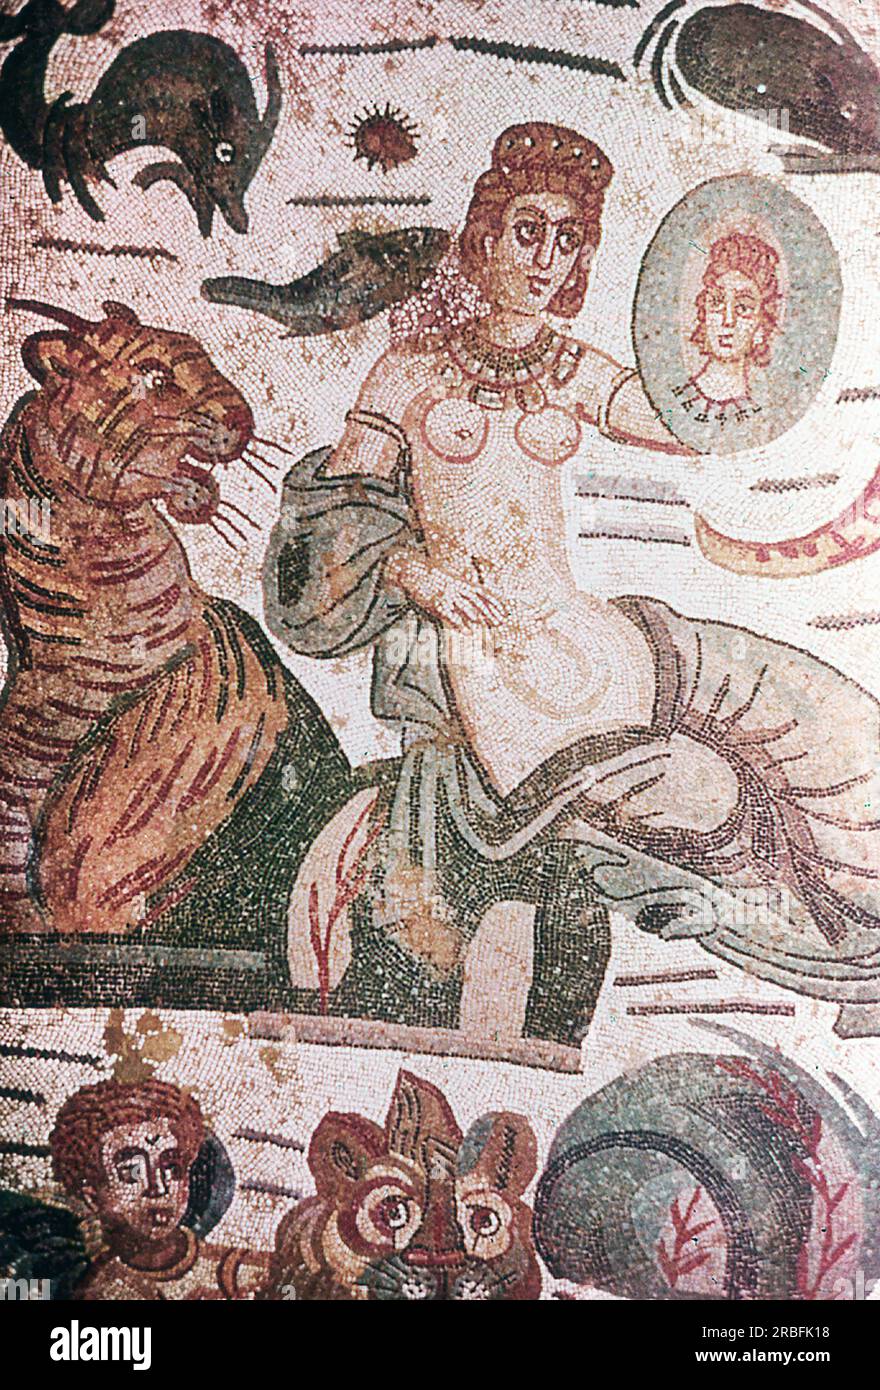 Dieses Foto eines Mosaiks mit einem Detail aus der Kammer von Arione wurde im Sommer 1970 auf der Piazza Armerina in Sizilien aufgenommen. Die Piazza Armerina beherbergt die römische Villa del Casale und ihre berühmten Mosaiken, die „besten Mosaike in situ in der römischen Welt“, wie von der UNESCO beschrieben, die sie 1997 in ihre Liste des Weltkulturerbes aufgenommen hat. Villa Romana war eine üppige Patrizier-Residenz, die im Zentrum eines riesigen Latifundiums (Landwirtschaftsgelände) am Ende des 4. Jahrhunderts n. Chr. erbaut wurde. Es wird angenommen, dass es einem Mitglied der römischen Senatorenaristokratie gehörte, der mit exotischen Tieren handelte. Stockfoto